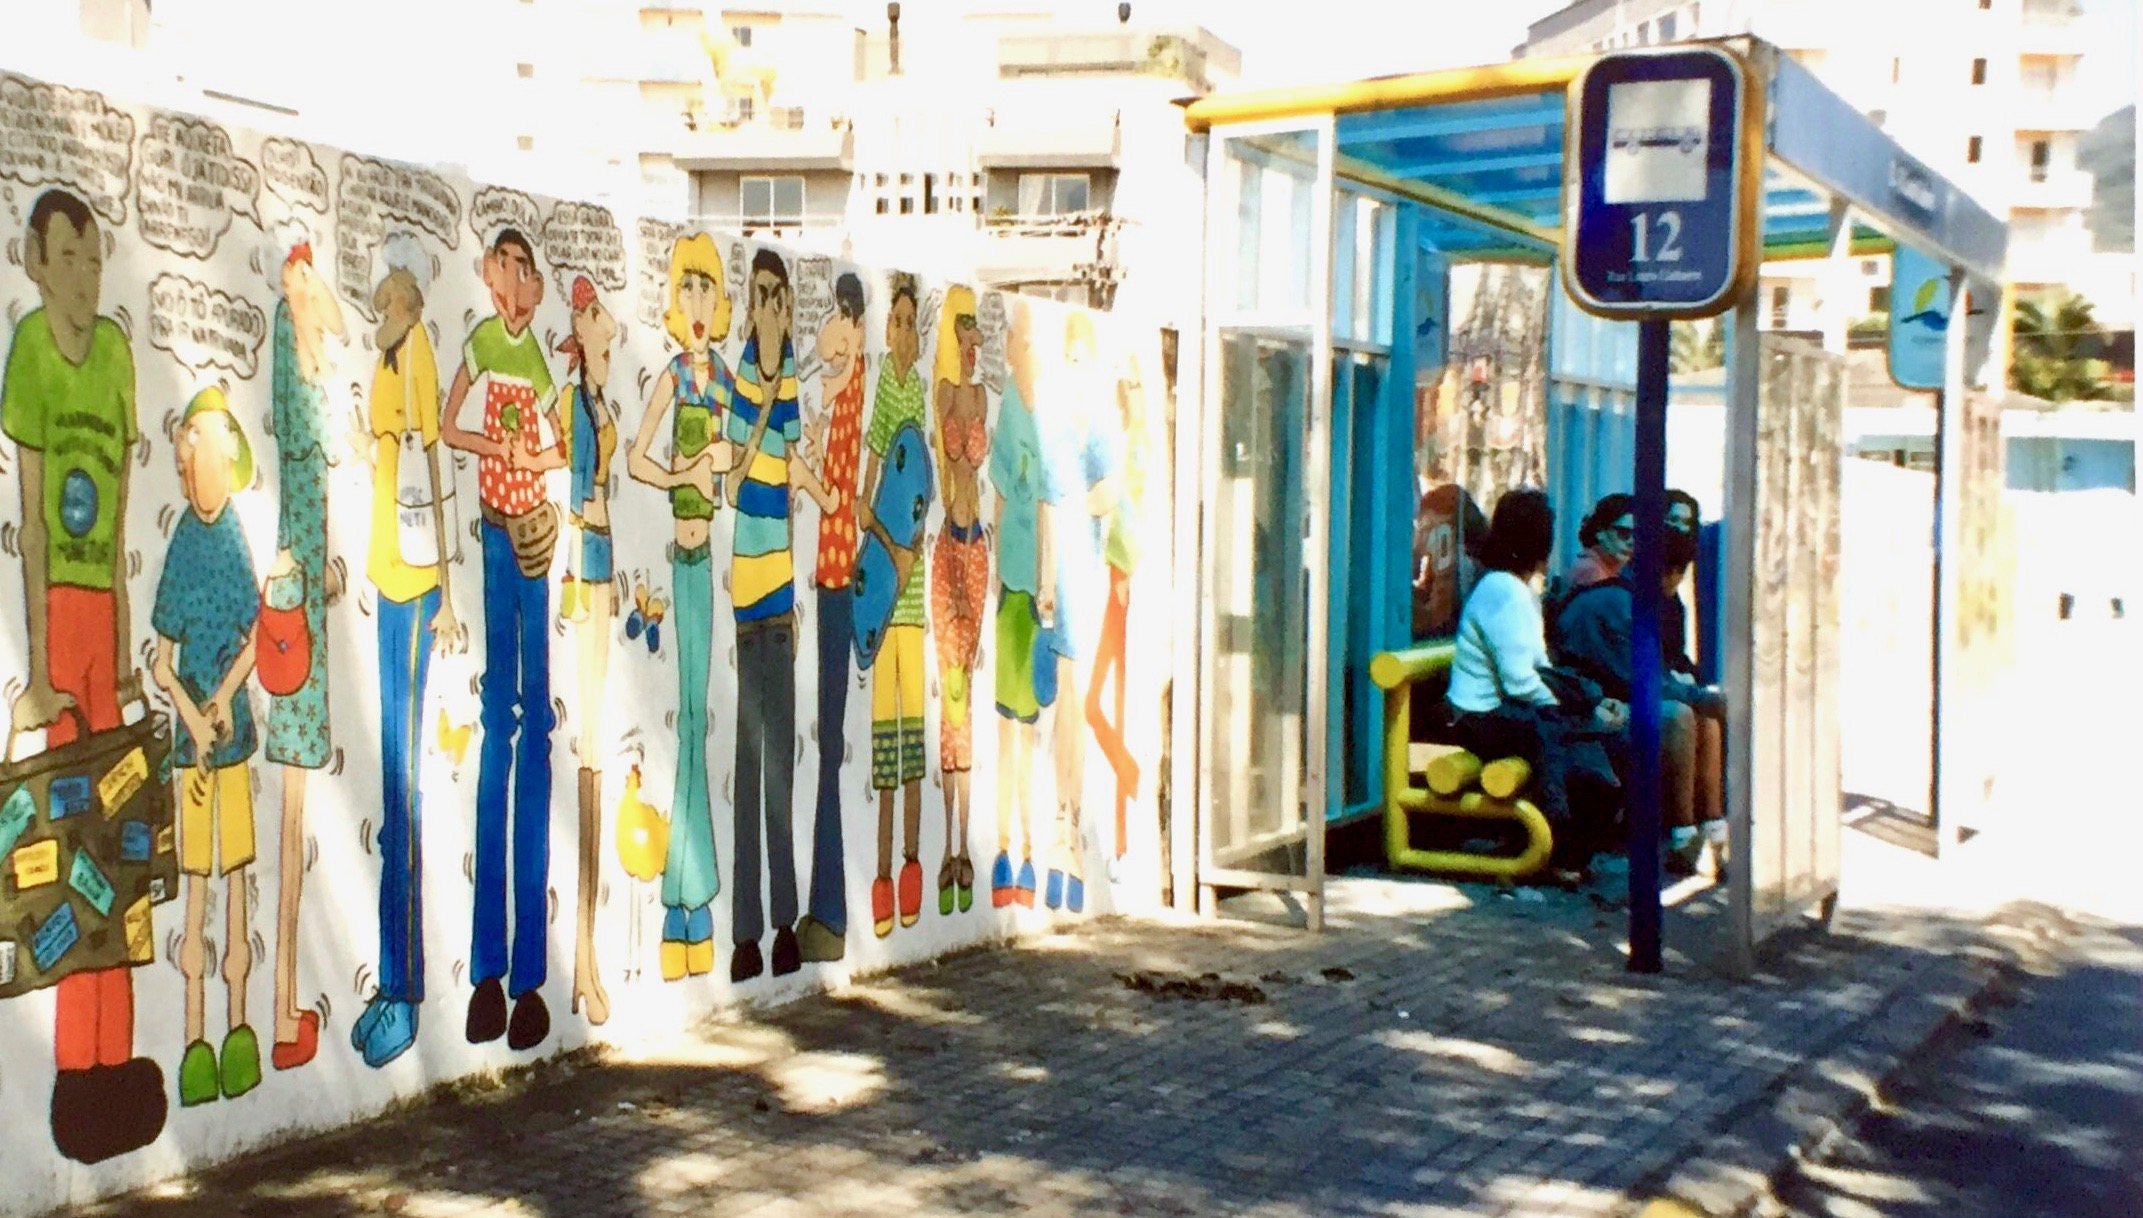 #paracegover A imagem mostra pessoas sentadas no ponto de ônibus ao lado do muro desenhado.